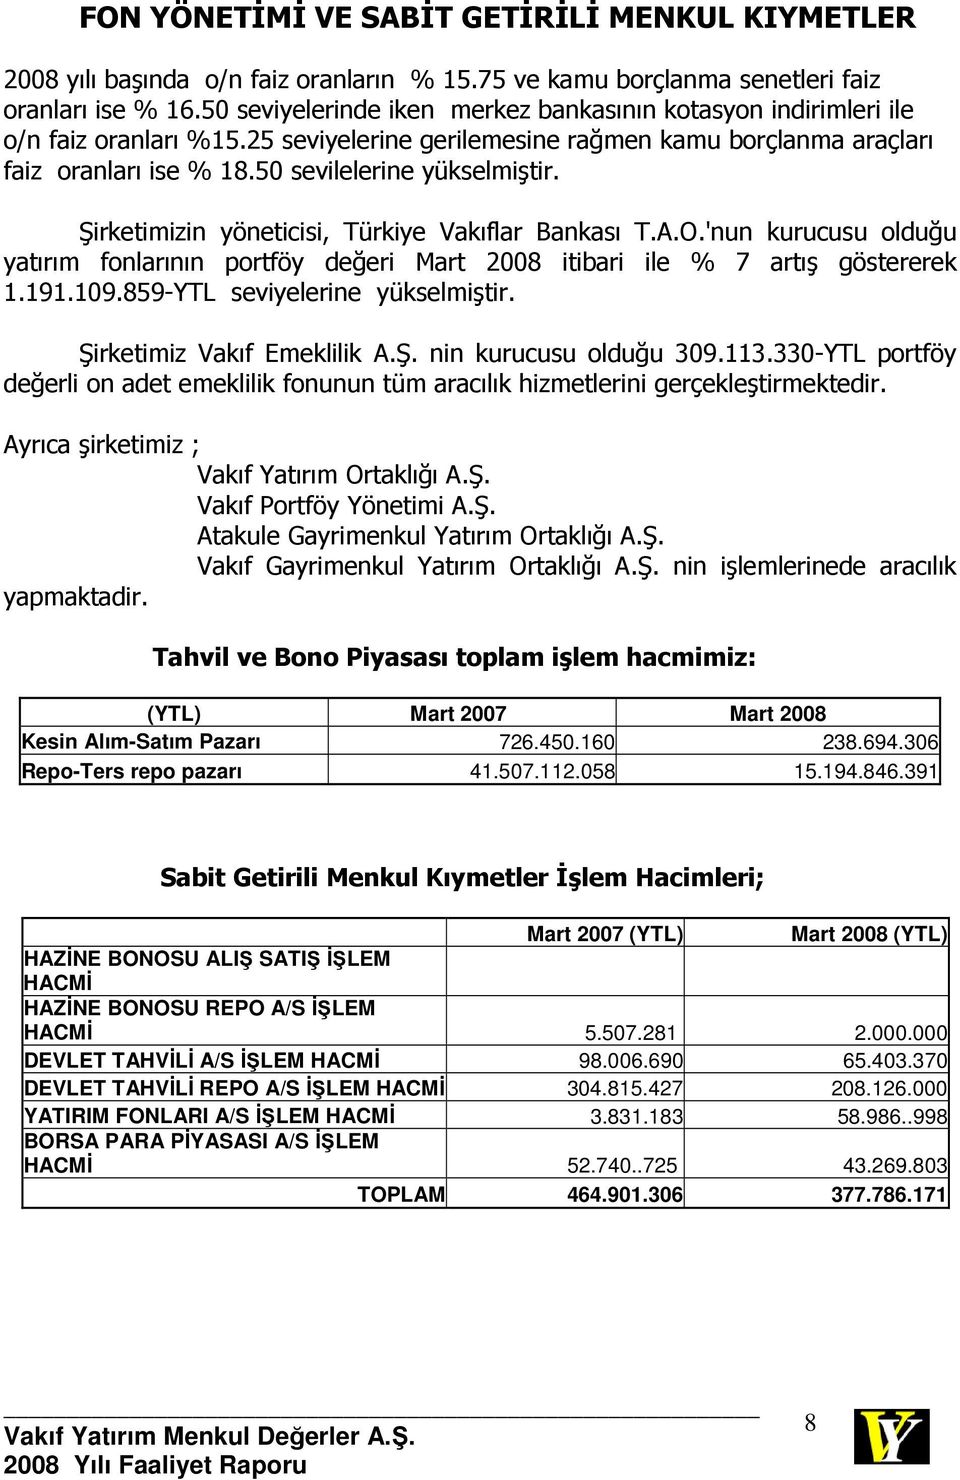 Şirketimizin yöneticisi, Türkiye Vakıflar Bankası T.A.O.'nun kurucusu olduğu yatırım fonlarının portföy değeri Mart 2008 itibari ile % 7 artış göstererek 1.191.109.859-YTL seviyelerine yükselmiştir.